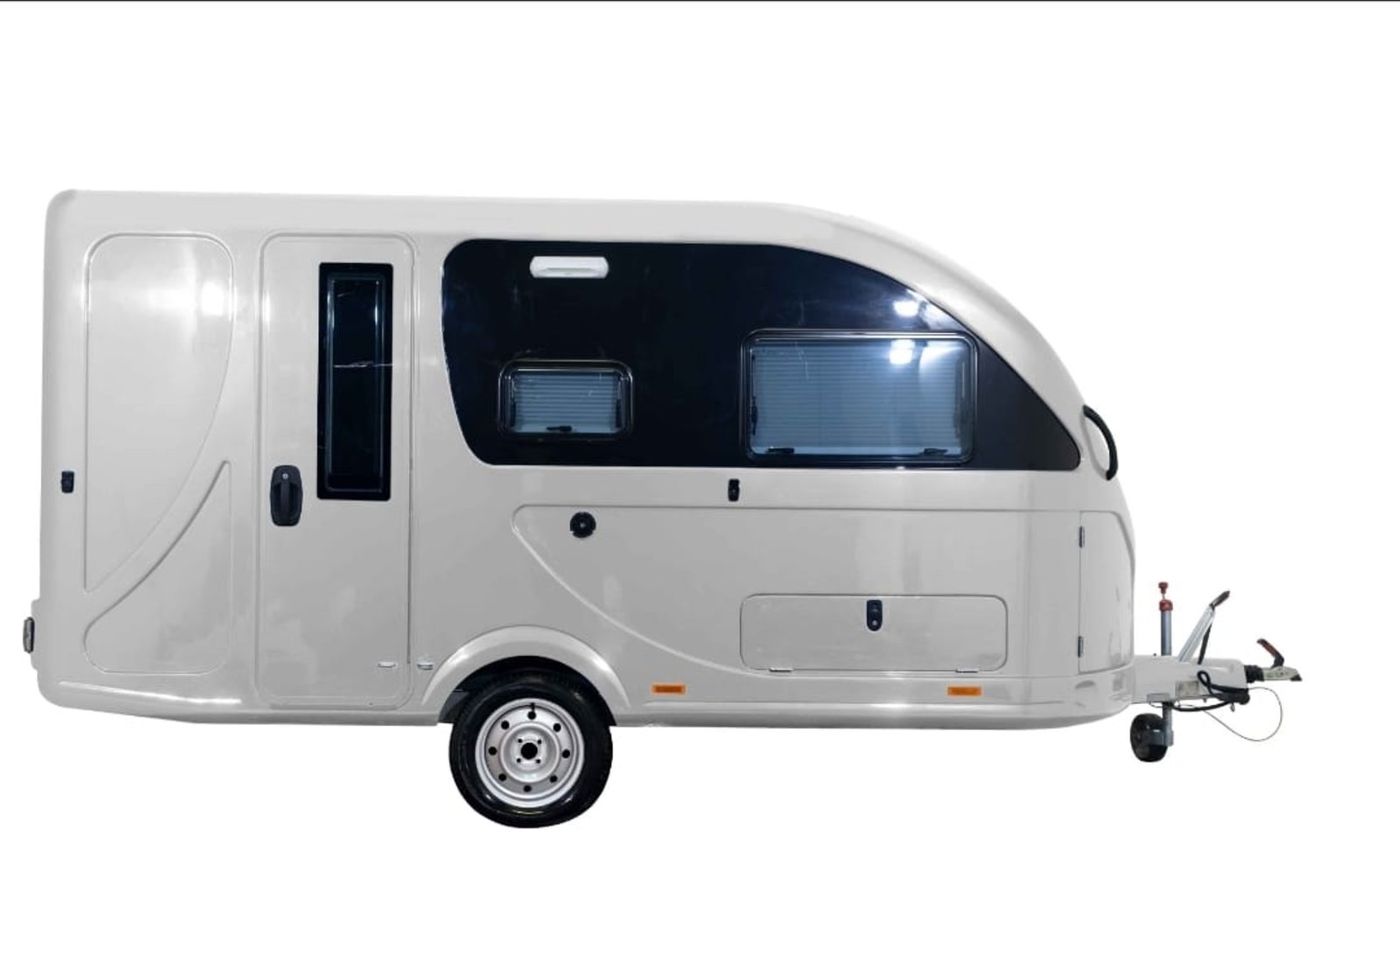 Andere 5K Caravan Arkut 2 Premium, Neuwagen